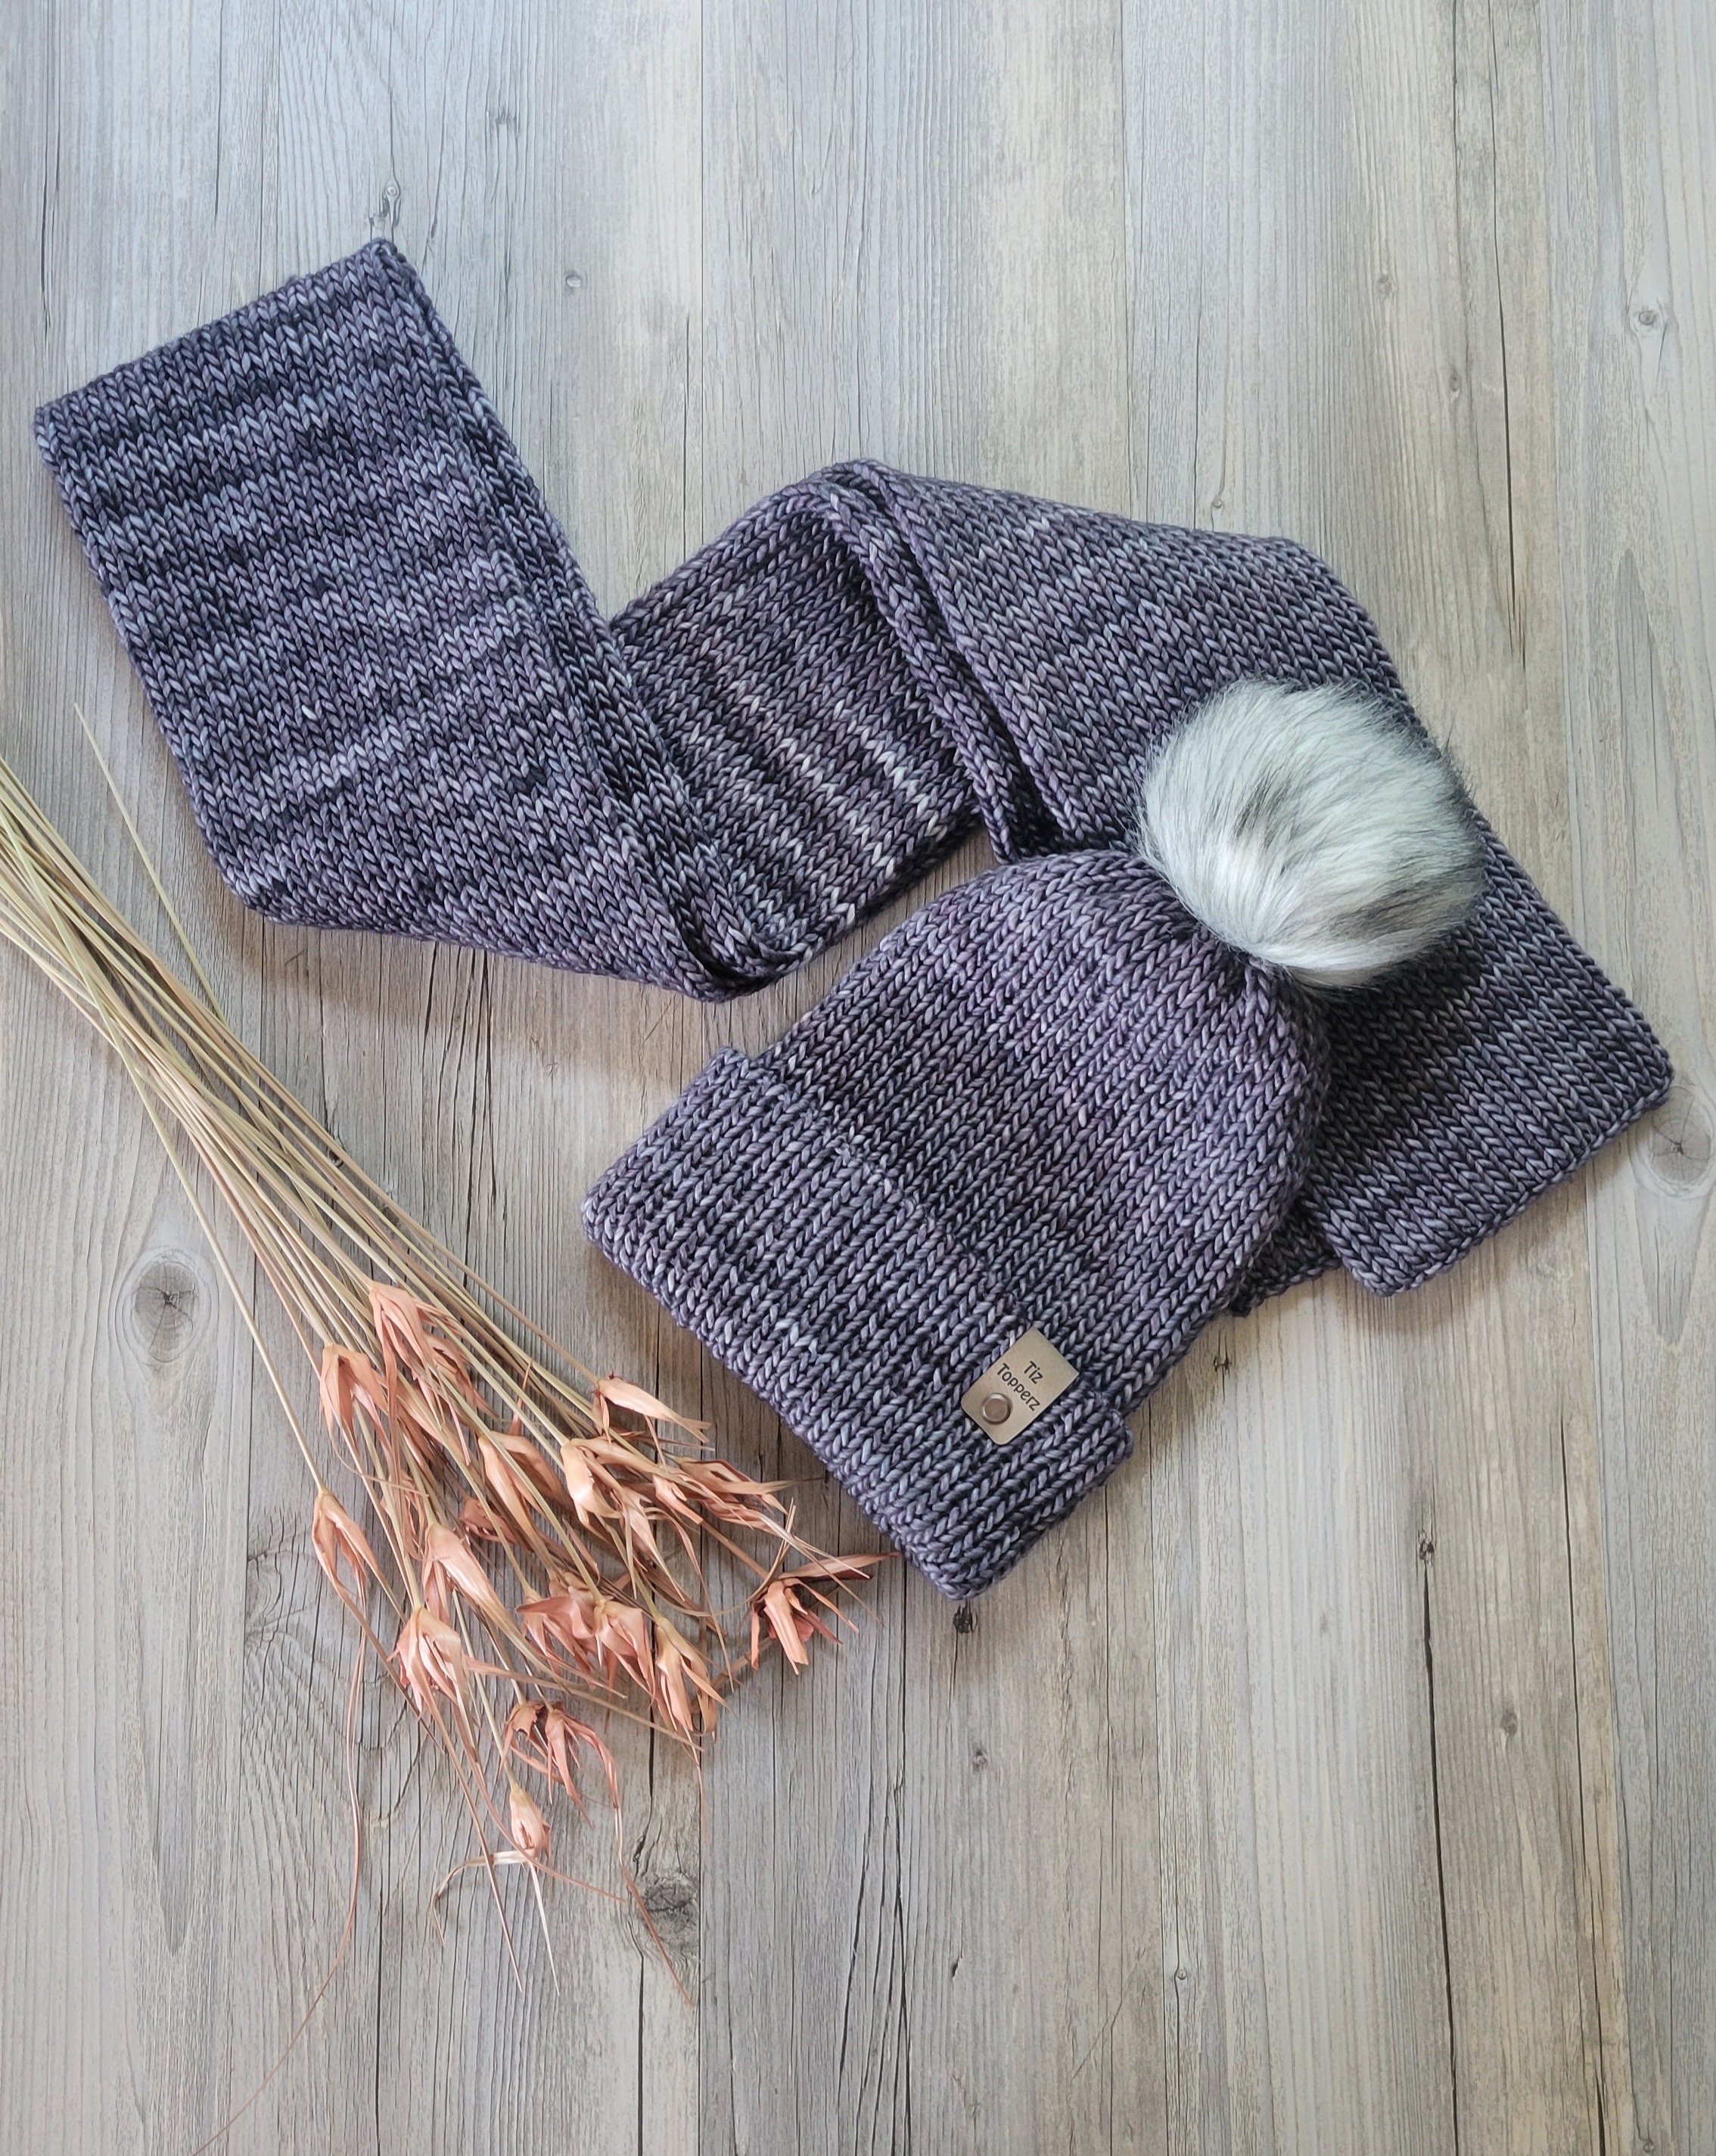 Matching Alpaca Hat, Scarf, and Mitten Set Medium / Dark Gray